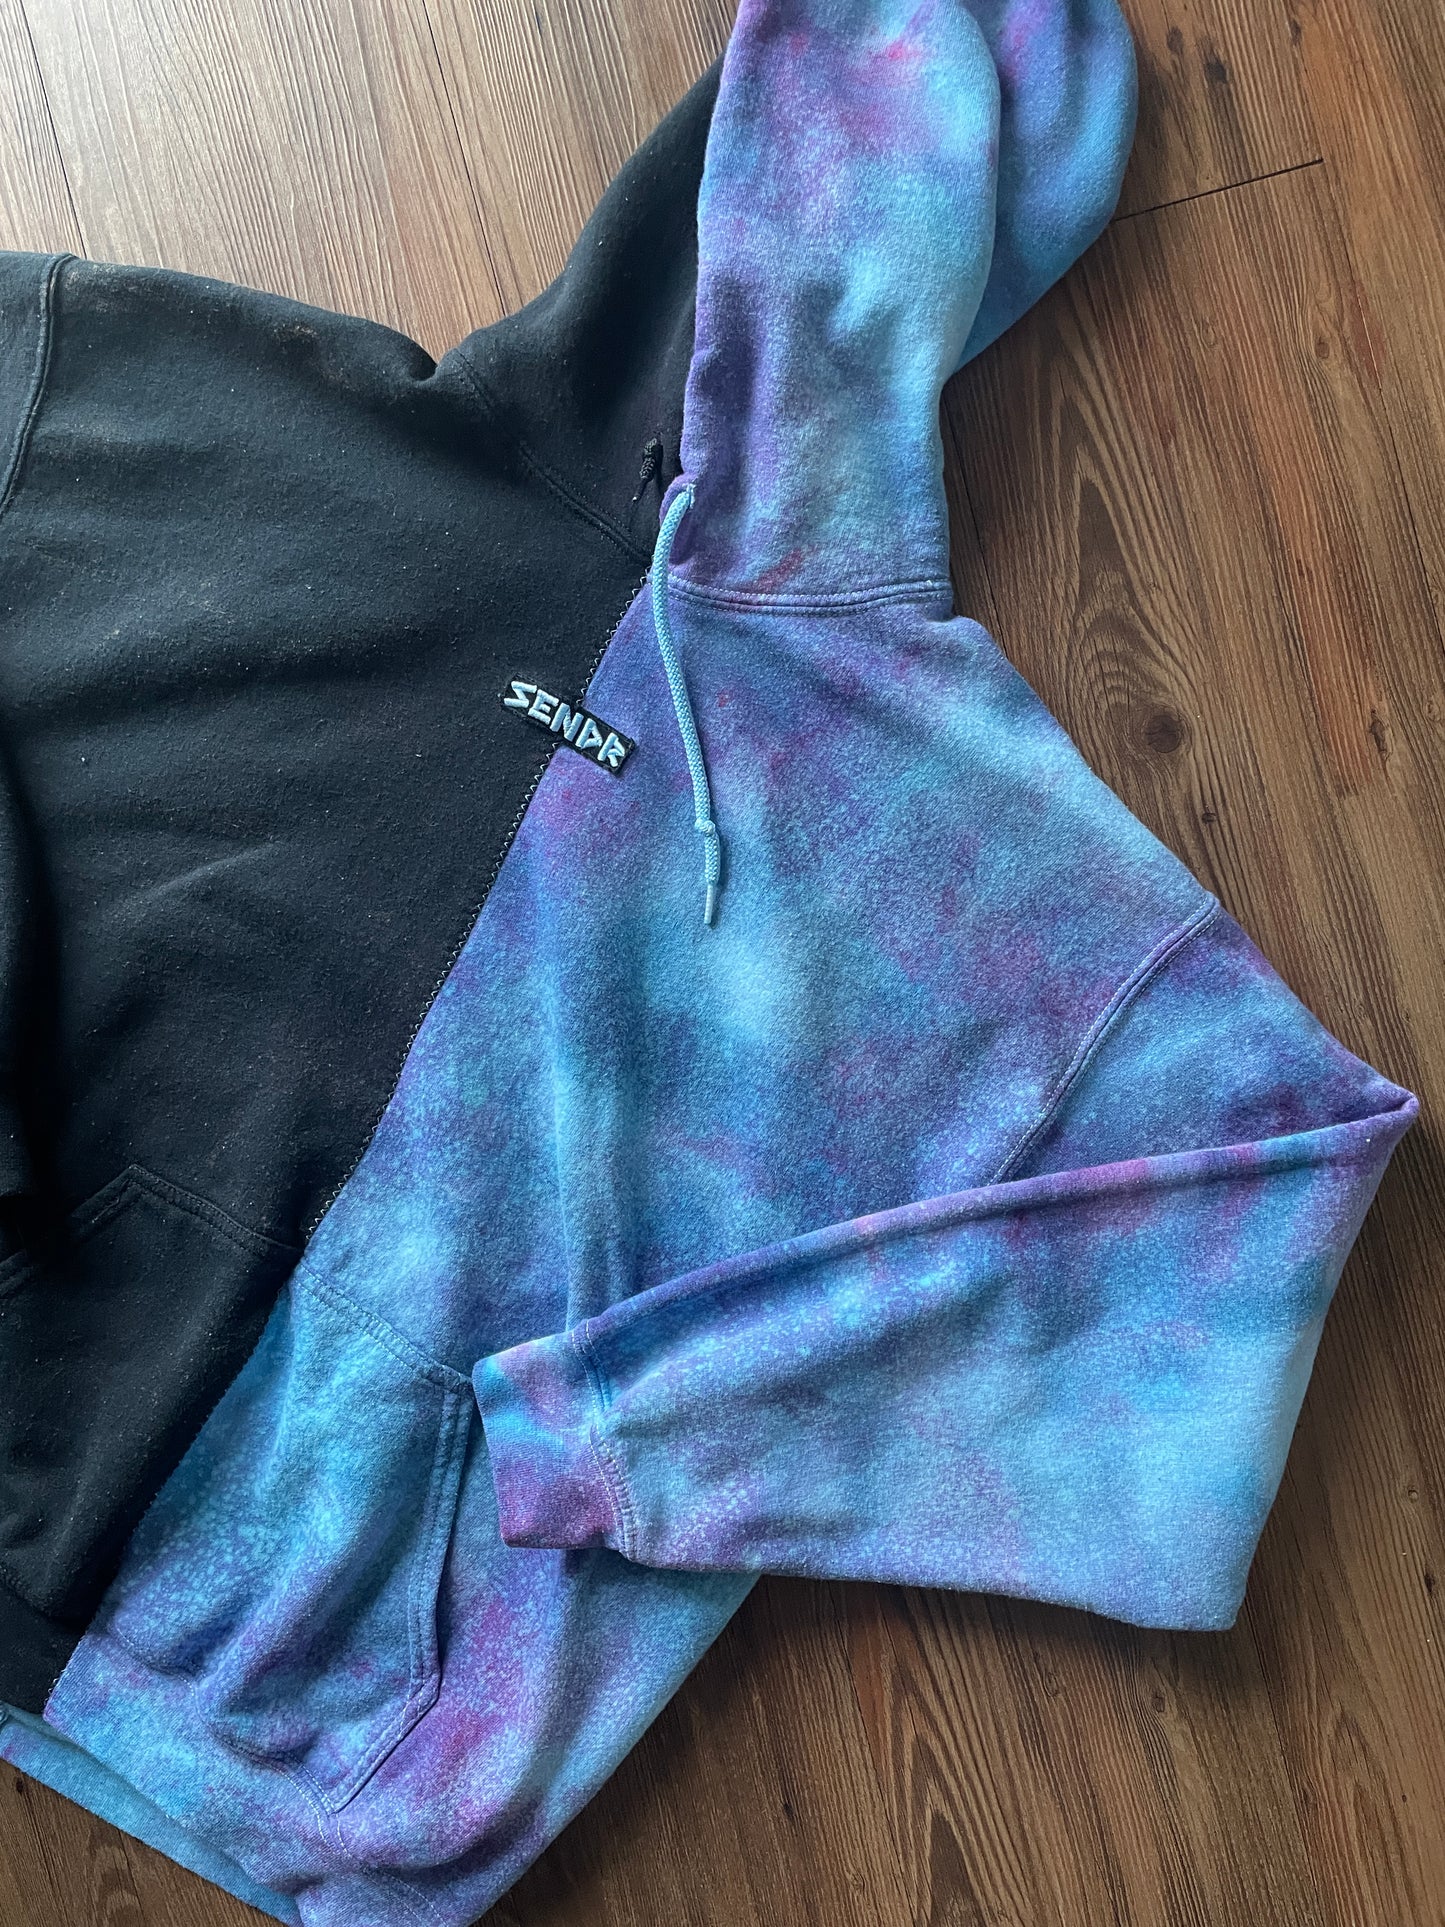 LARGE Men’s SENDR brand Half Galaxy Handmade Tie Dye Sweatshirt | One-Of-a-Kind Black and Blue Long Sleeve Hoodie